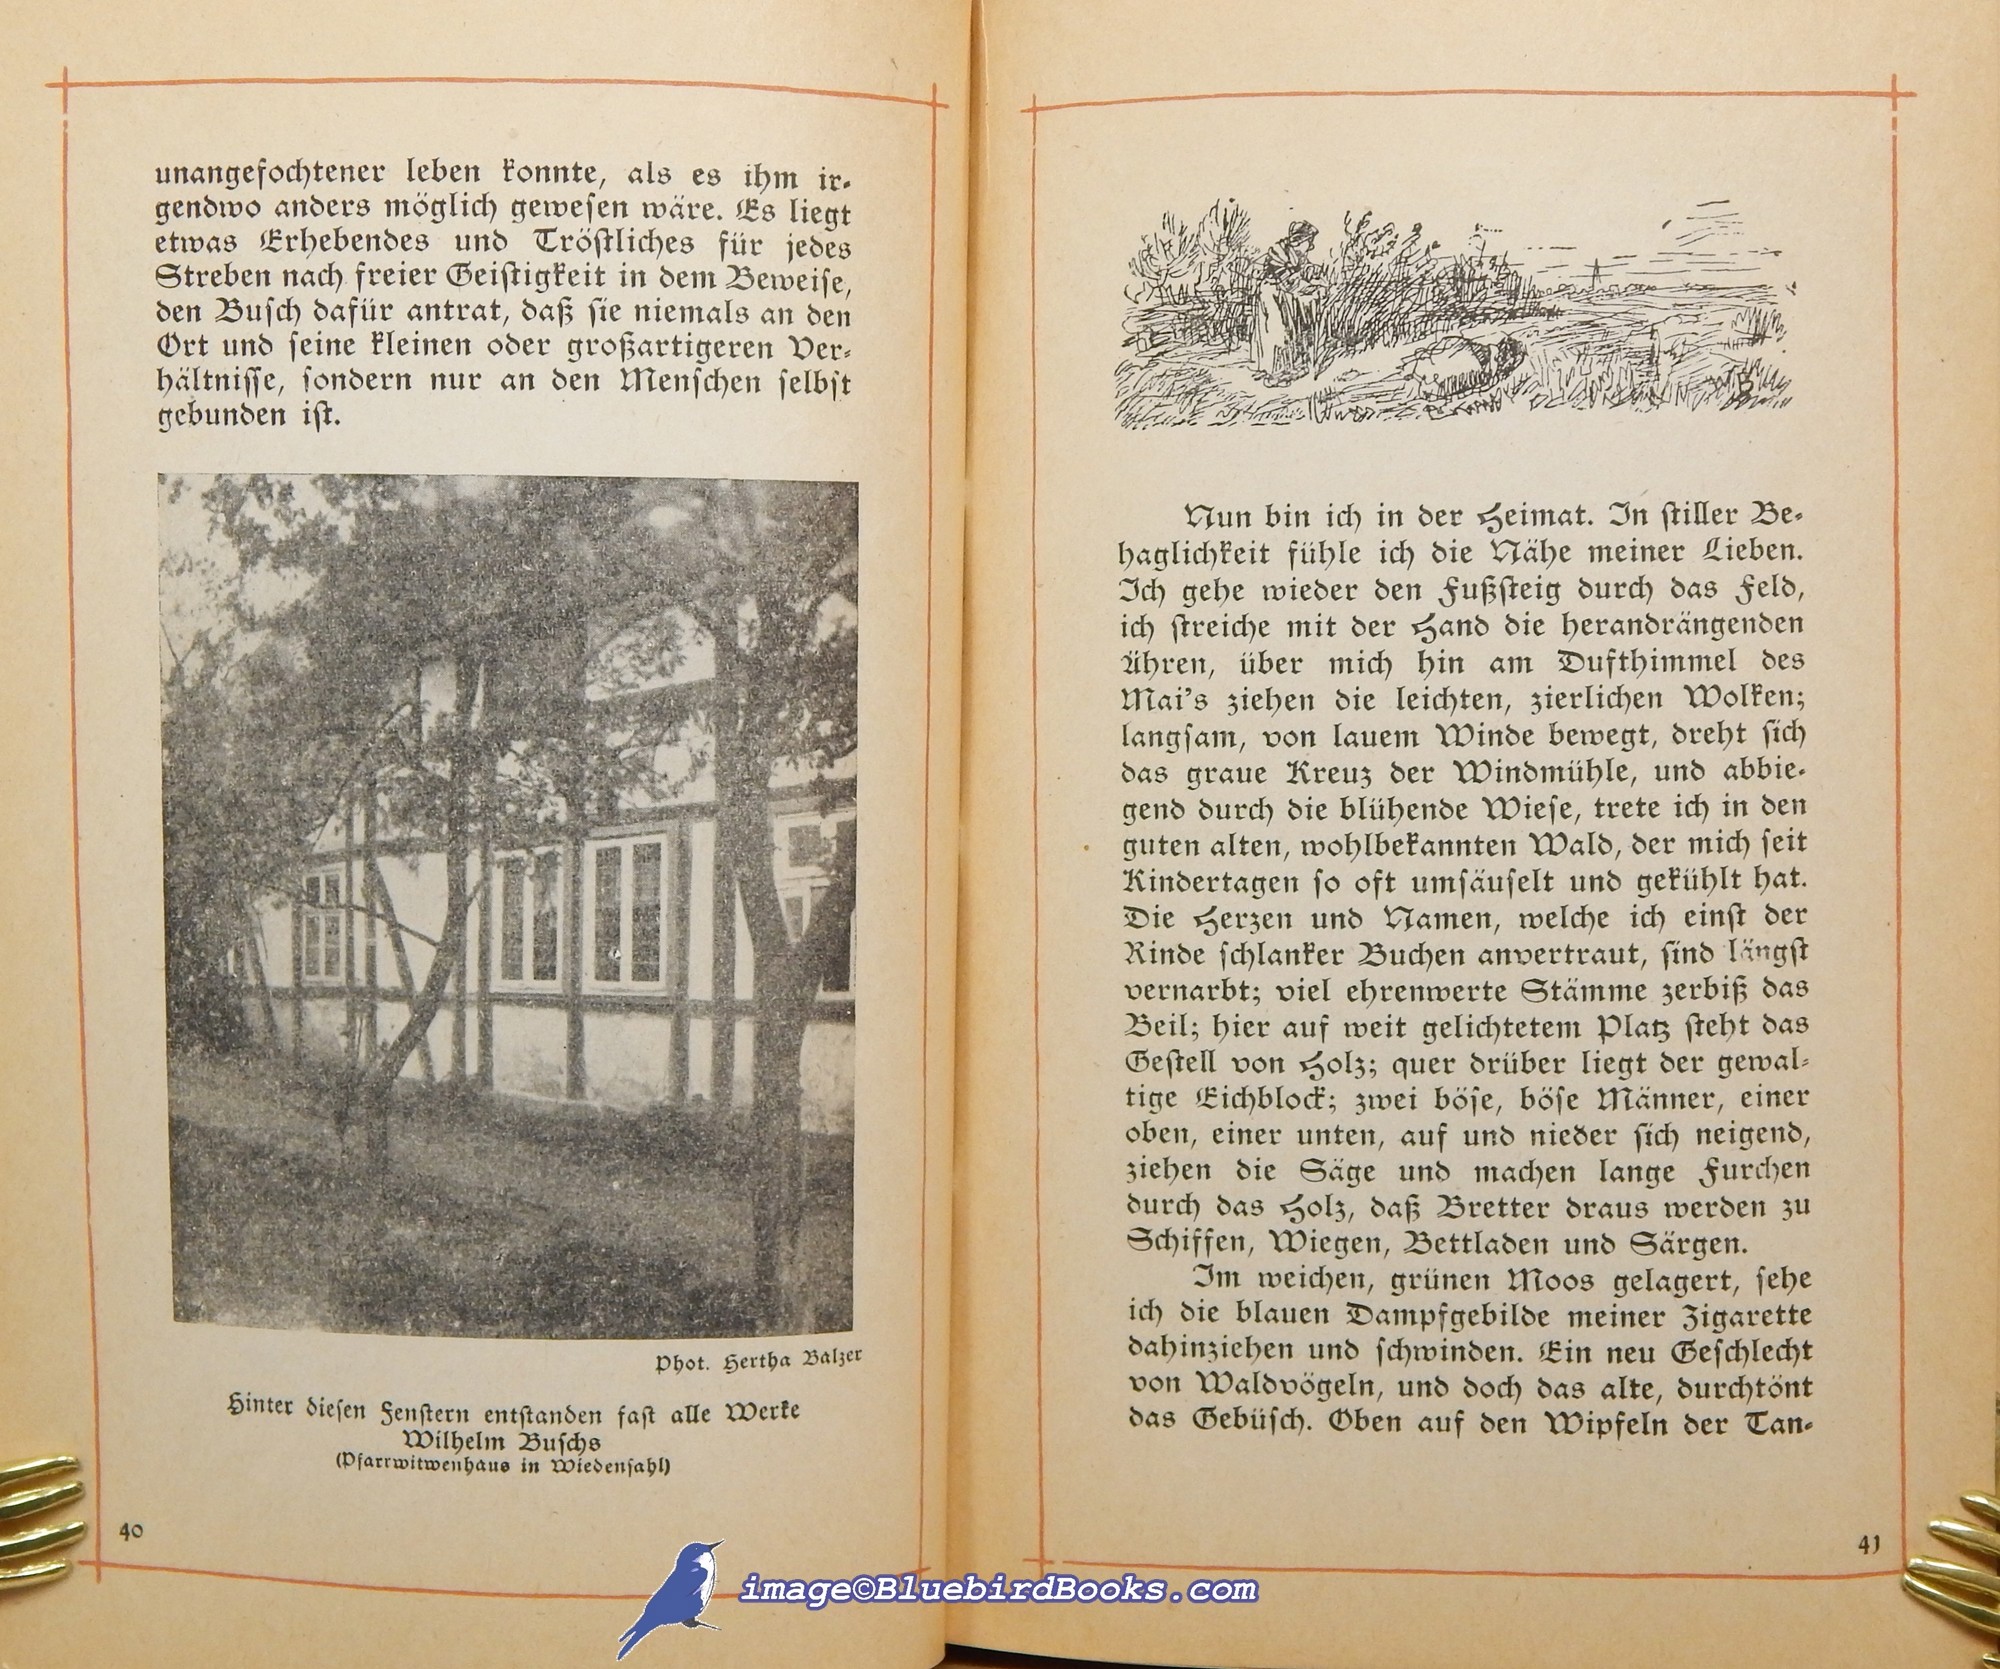 BUSCH, WILHELM (AUTHOR AND ILLUSTRATOR); BALZER, HANS (EDITOR) - Wilhelm Buschs Buch Des Lebens (Wilhelm Busch's Book of Life) (in German Language)